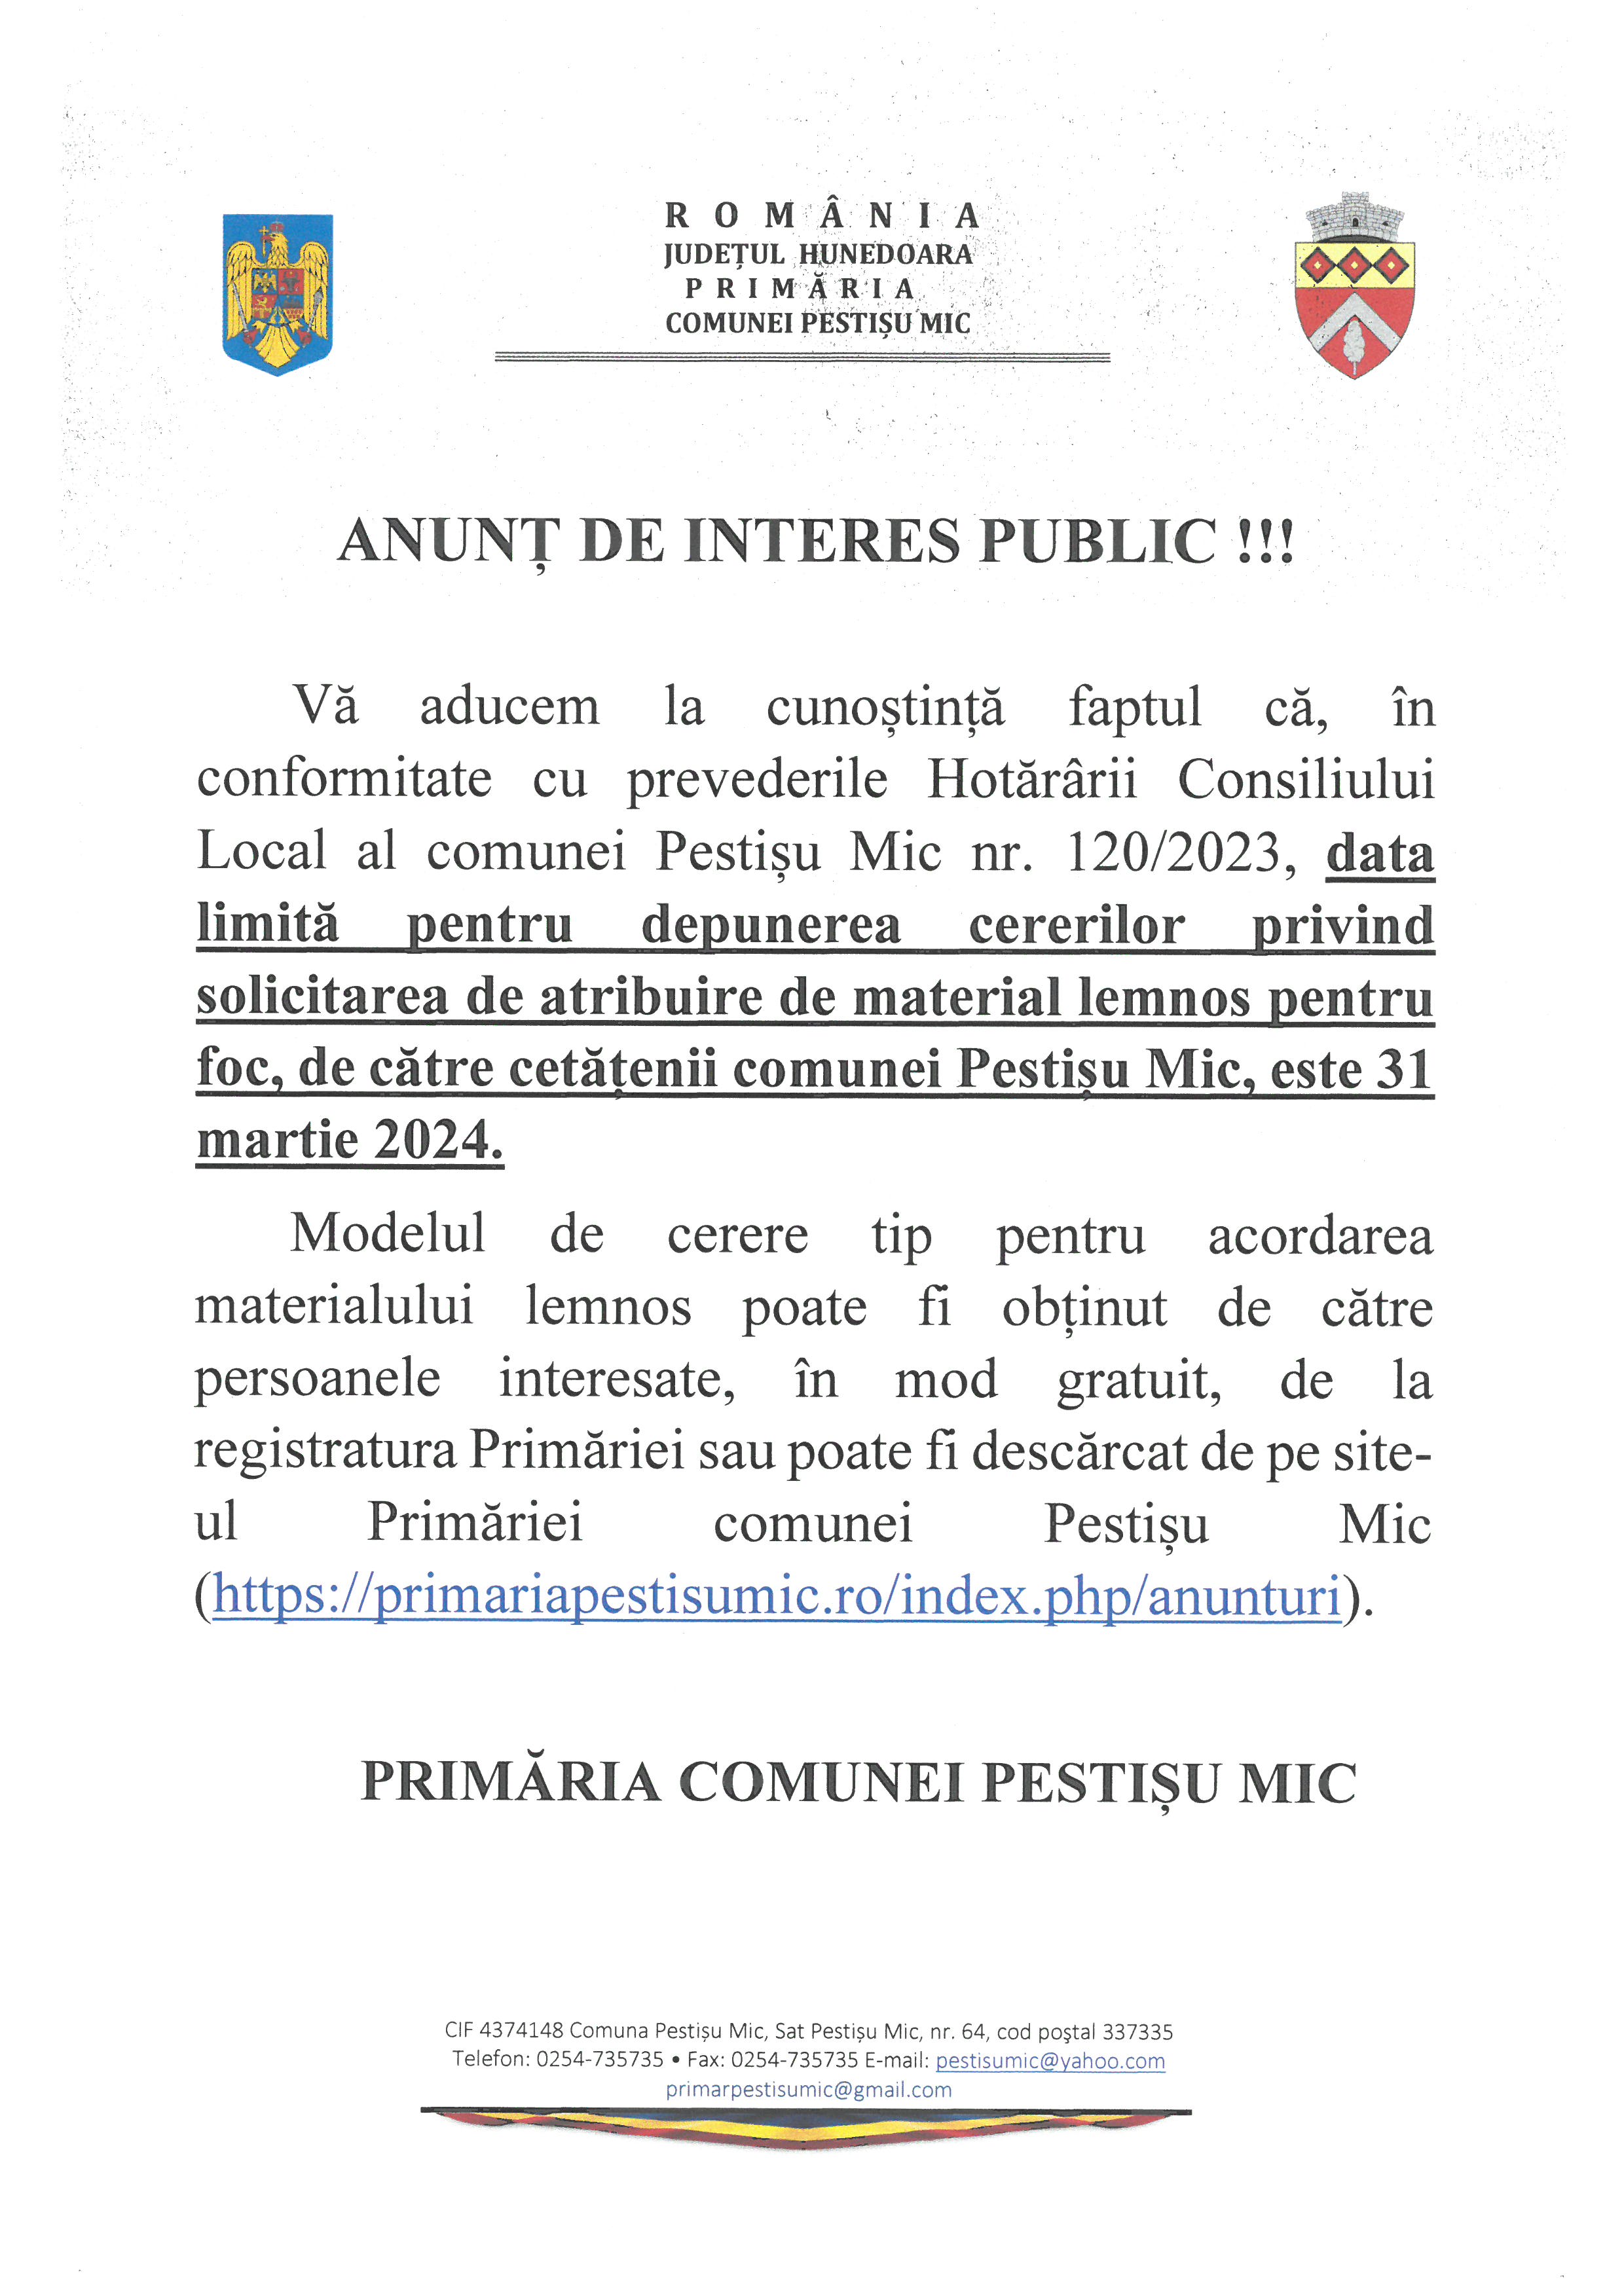 ANUNȚ DATĂ LIMITĂ DEPUNERE CERERE ATRIBUIRE MATERIAL LEMNOS PENTRU FOC 31.03.2024